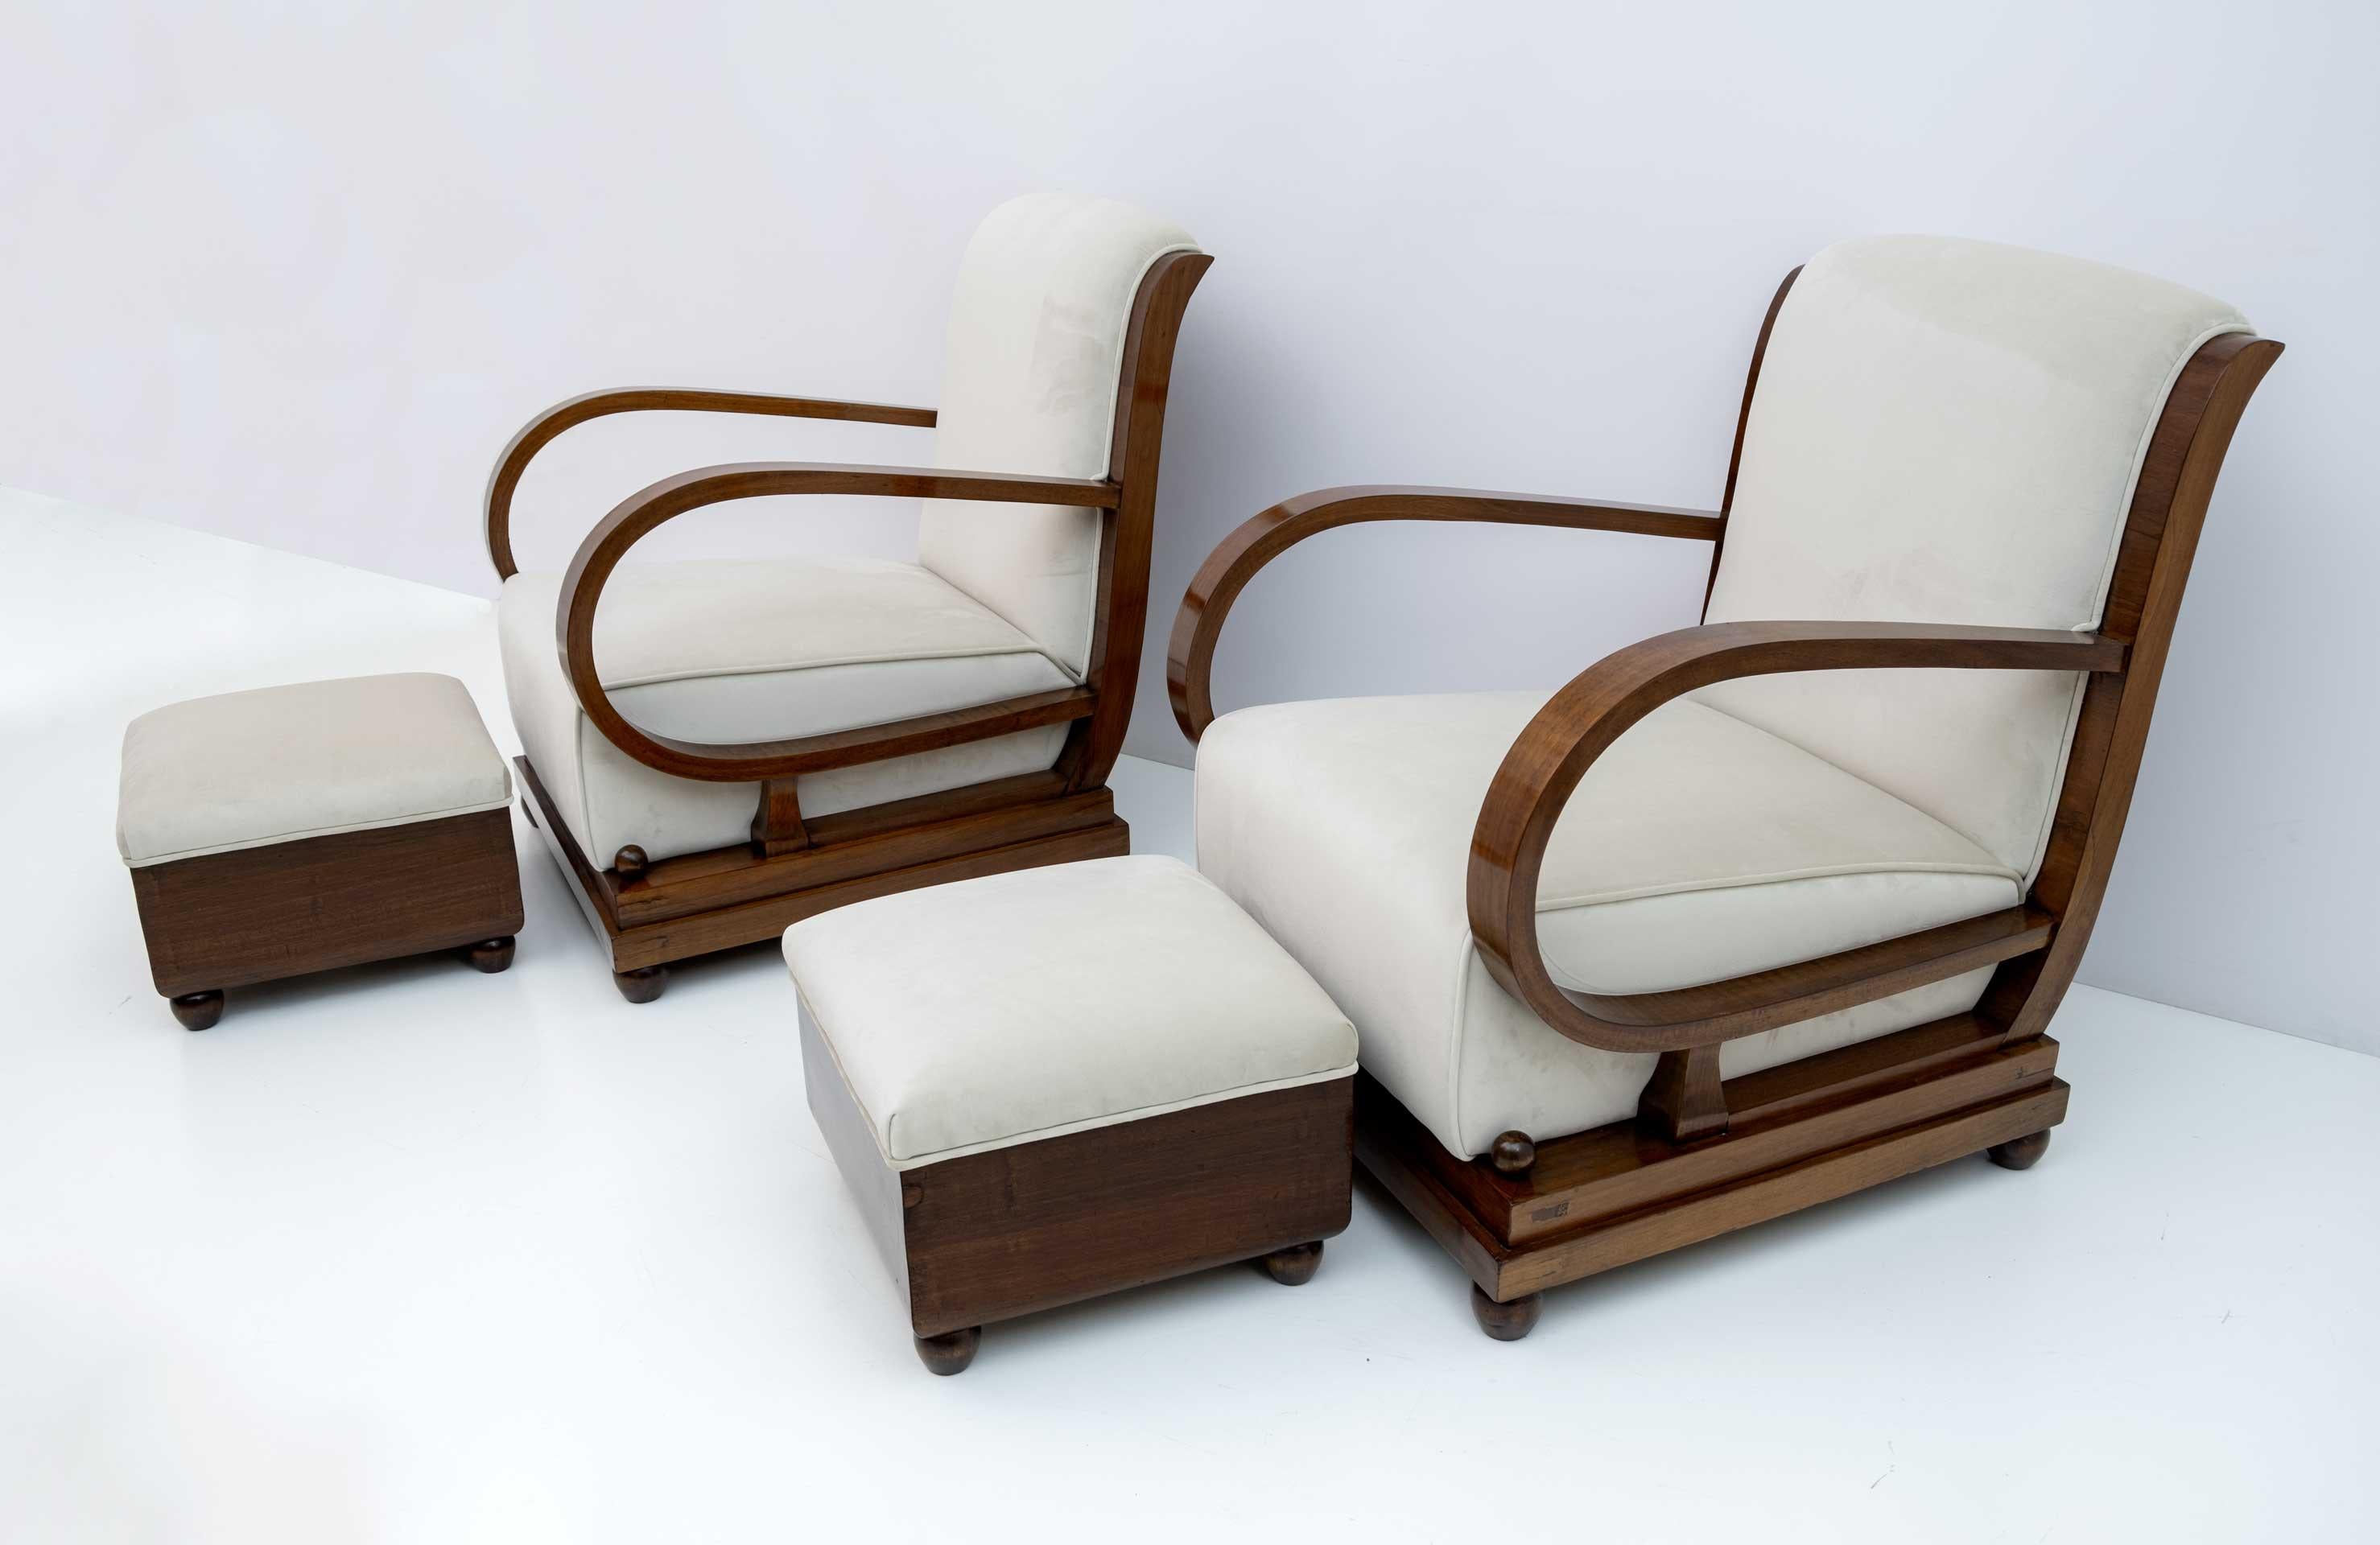 Italienische Garnitur aus den 1920er Jahren, bestehend aus einem Paar Sesseln und zwei Hockern. Die mit Nussbaum und elfenbeinfarbenem Samt gepolsterten Rückenlehnen des Sofas und der Sessel aus der frühen Art-déco-Periode in Norditalien sind